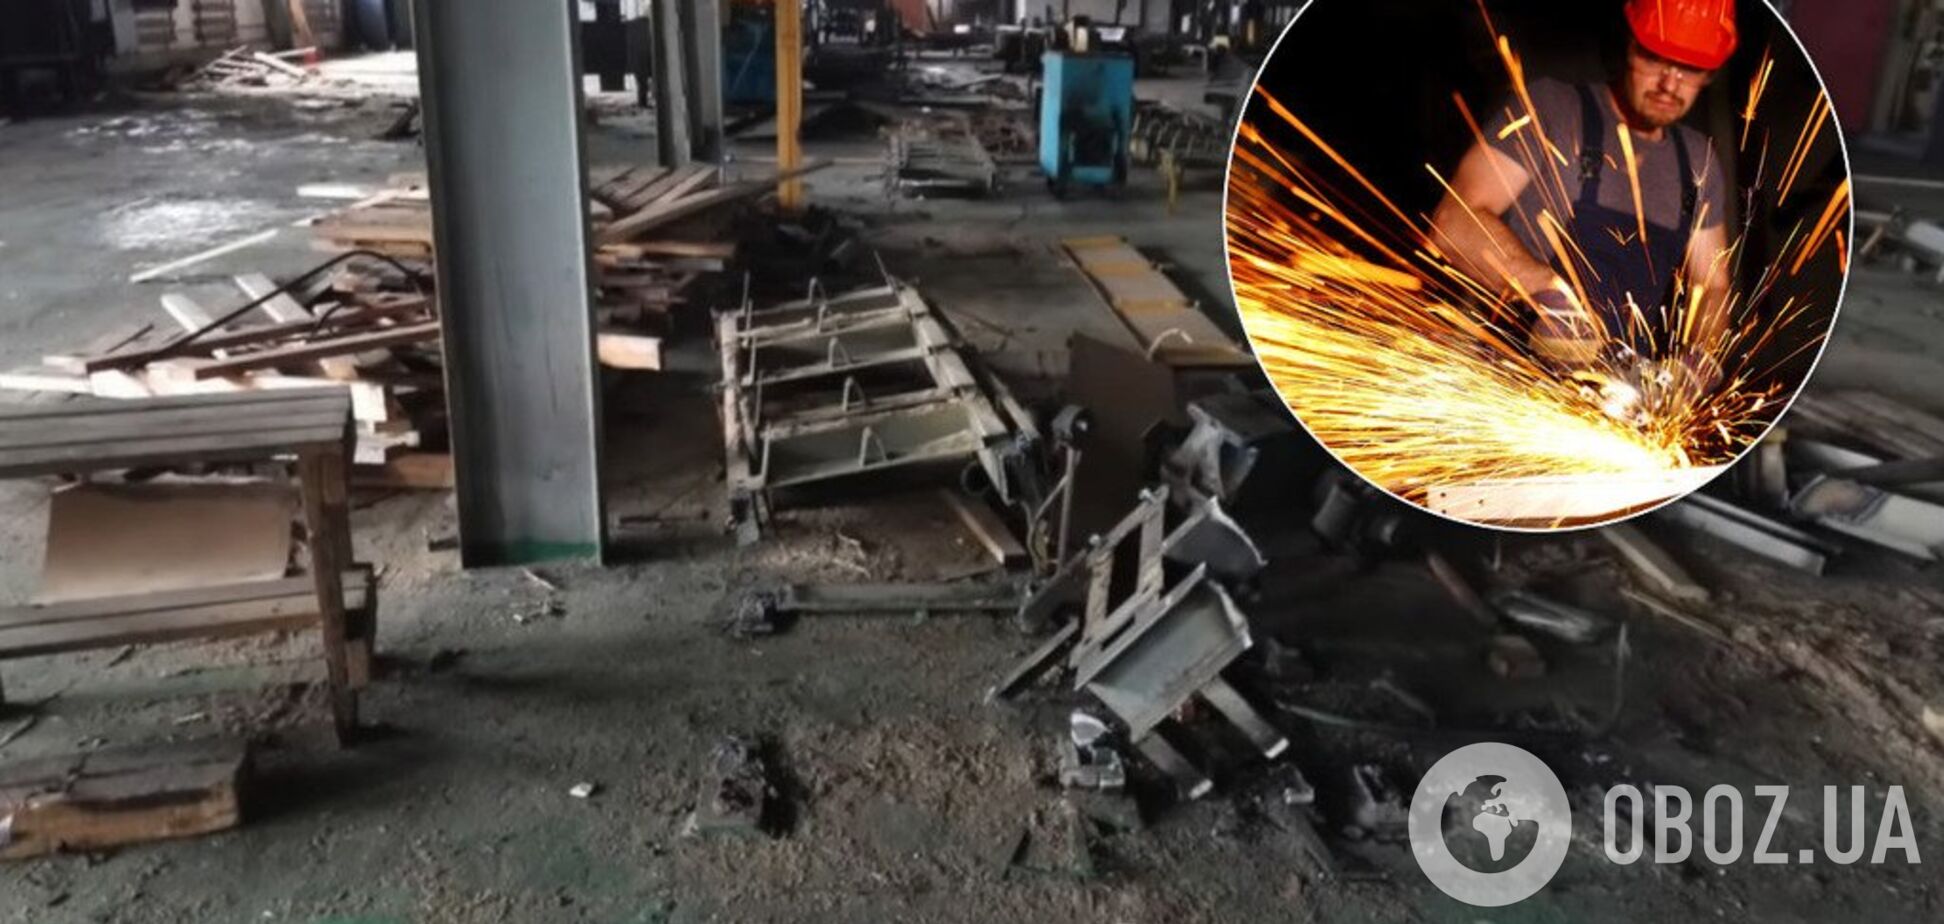 Розпад, деградація і розруха: блогер показав руїни заводу на Донбасі